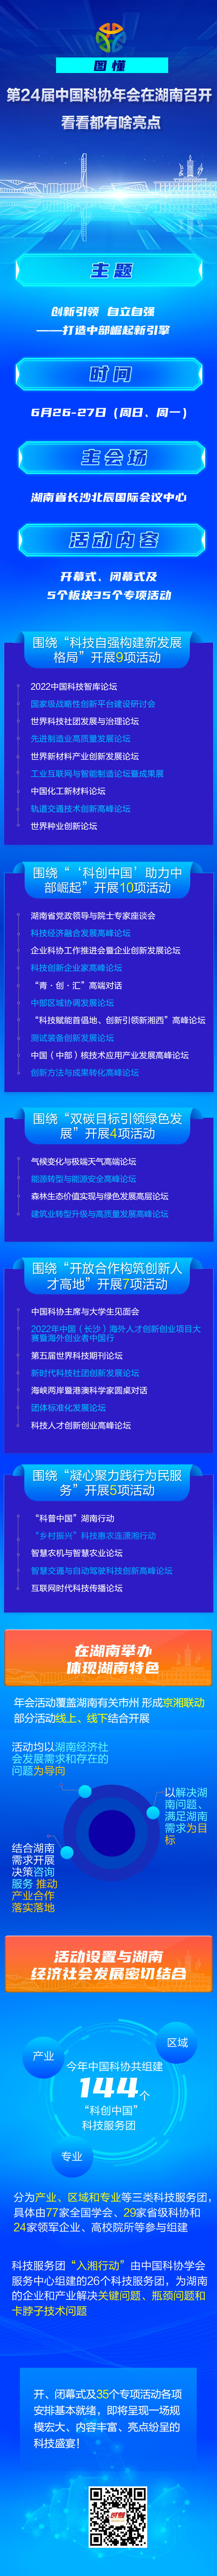 图懂丨第24届中国科协年会在湖南召开 看看都有啥亮点